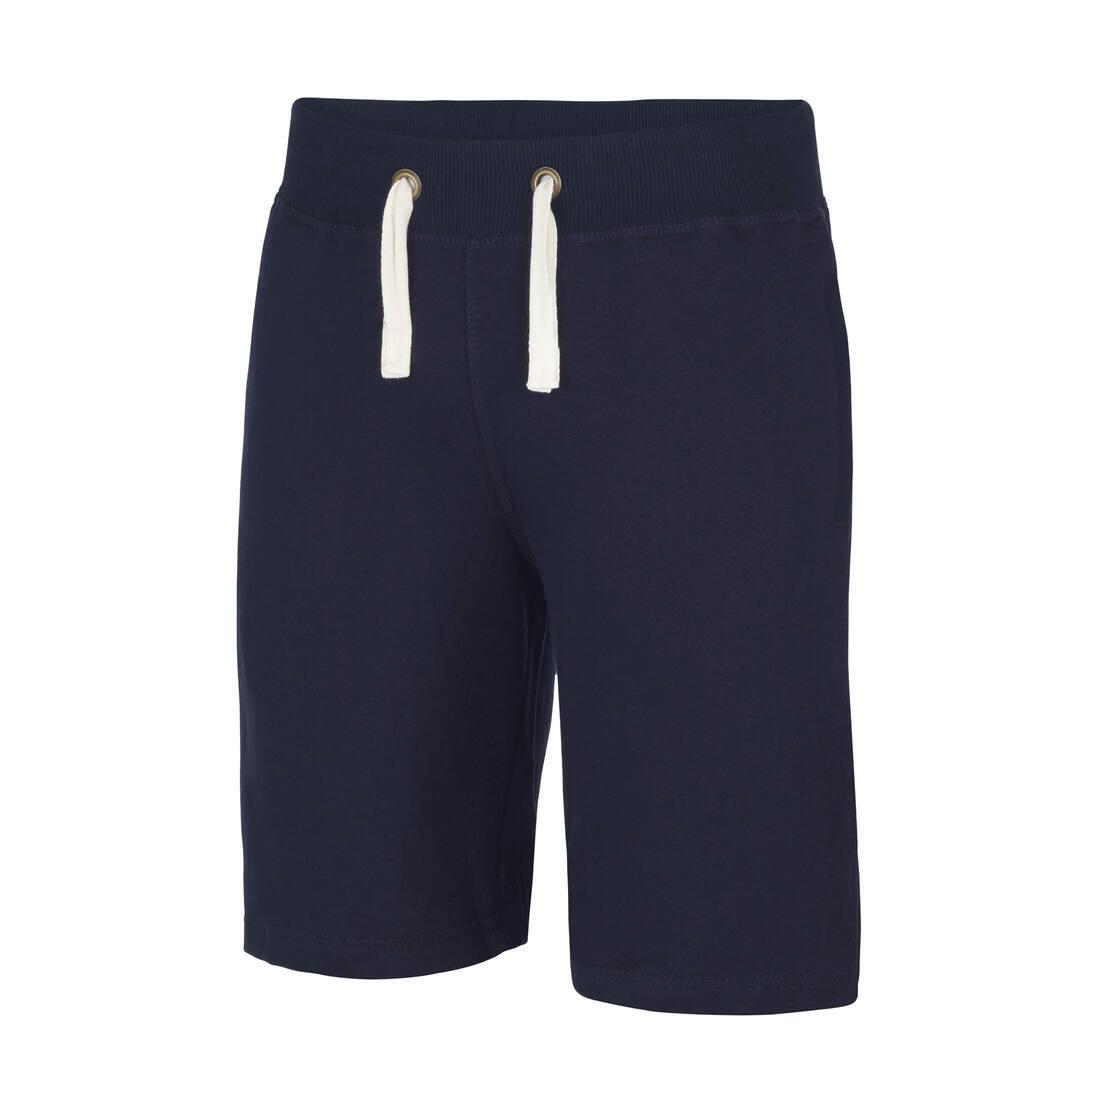 Stevige short voor mannen new french navy korte broek voor de Gym